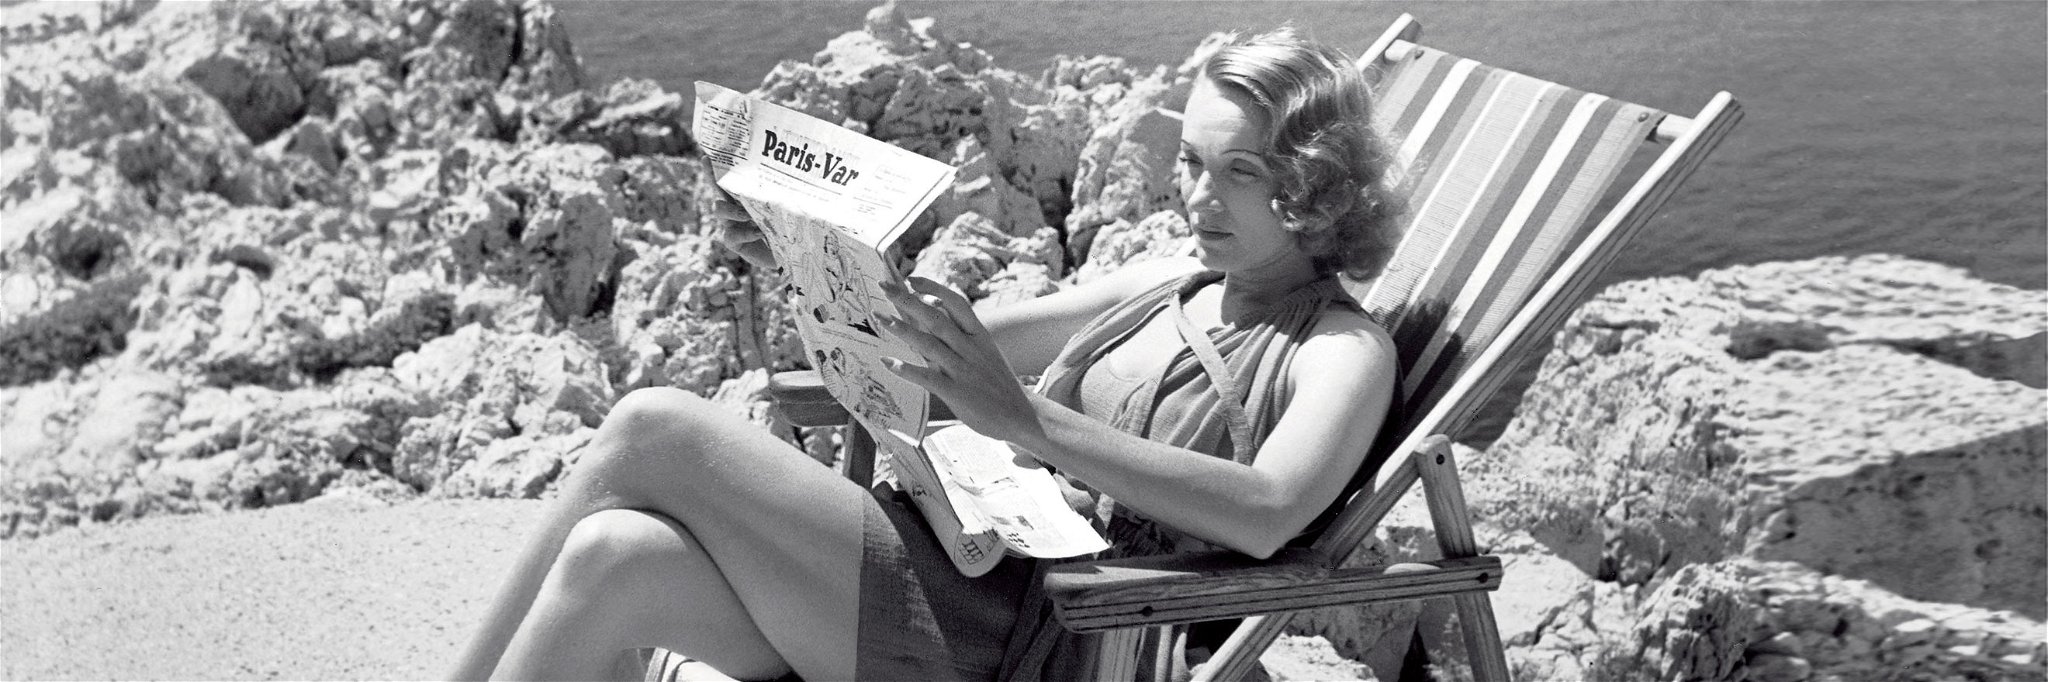 Marlene Dietrich bei der Lektüre des »Paris-Var« am Strand des »Eden-Roc«.